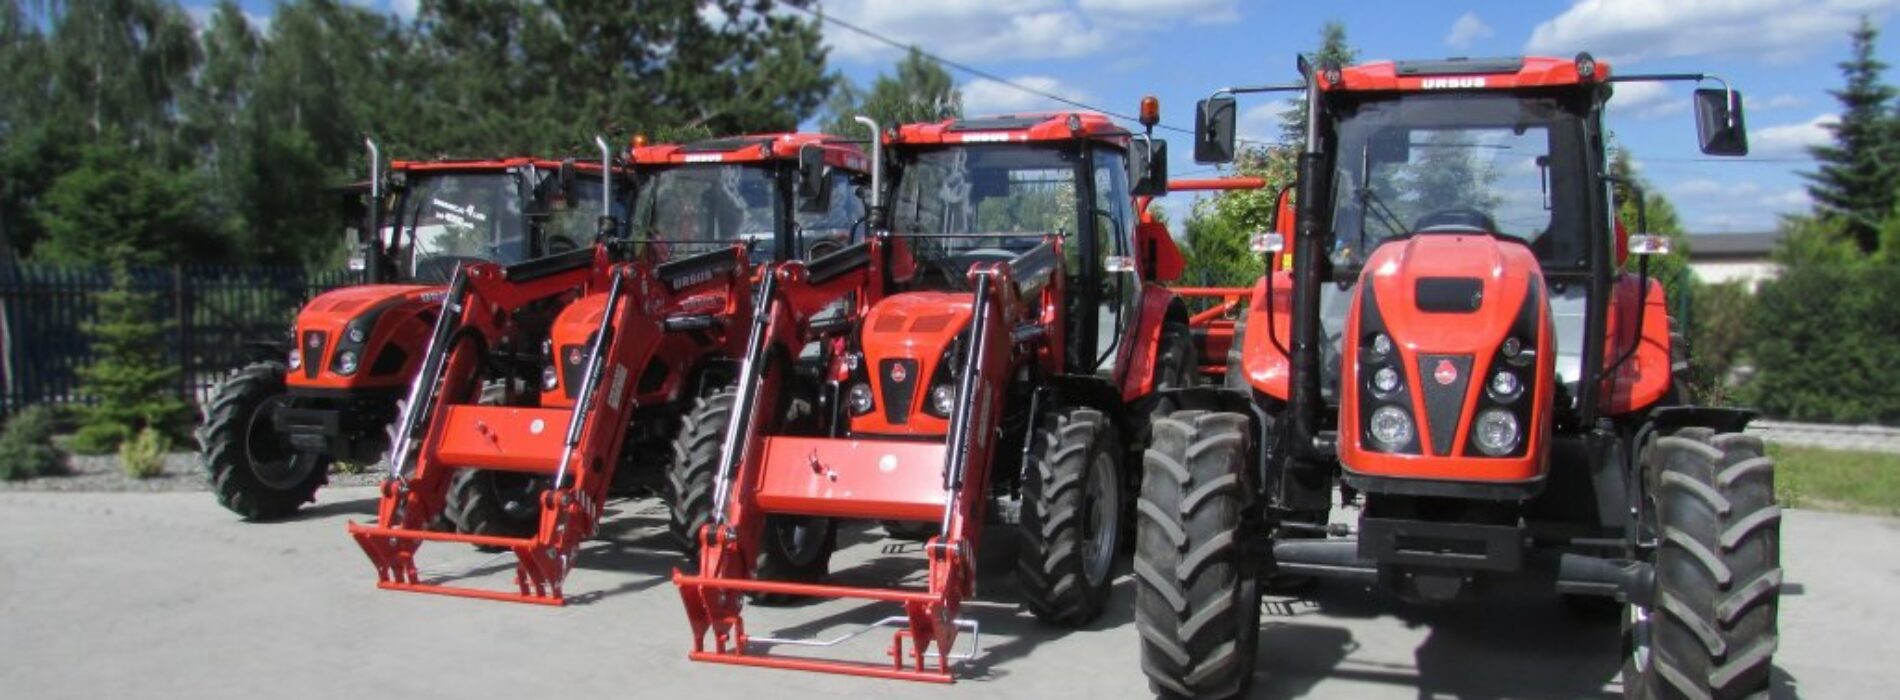 Hurtownia Rolnex – kompleksowe rozwiązania dla rolnictwa: części i maszyny rolnicze najwyższej jakości!